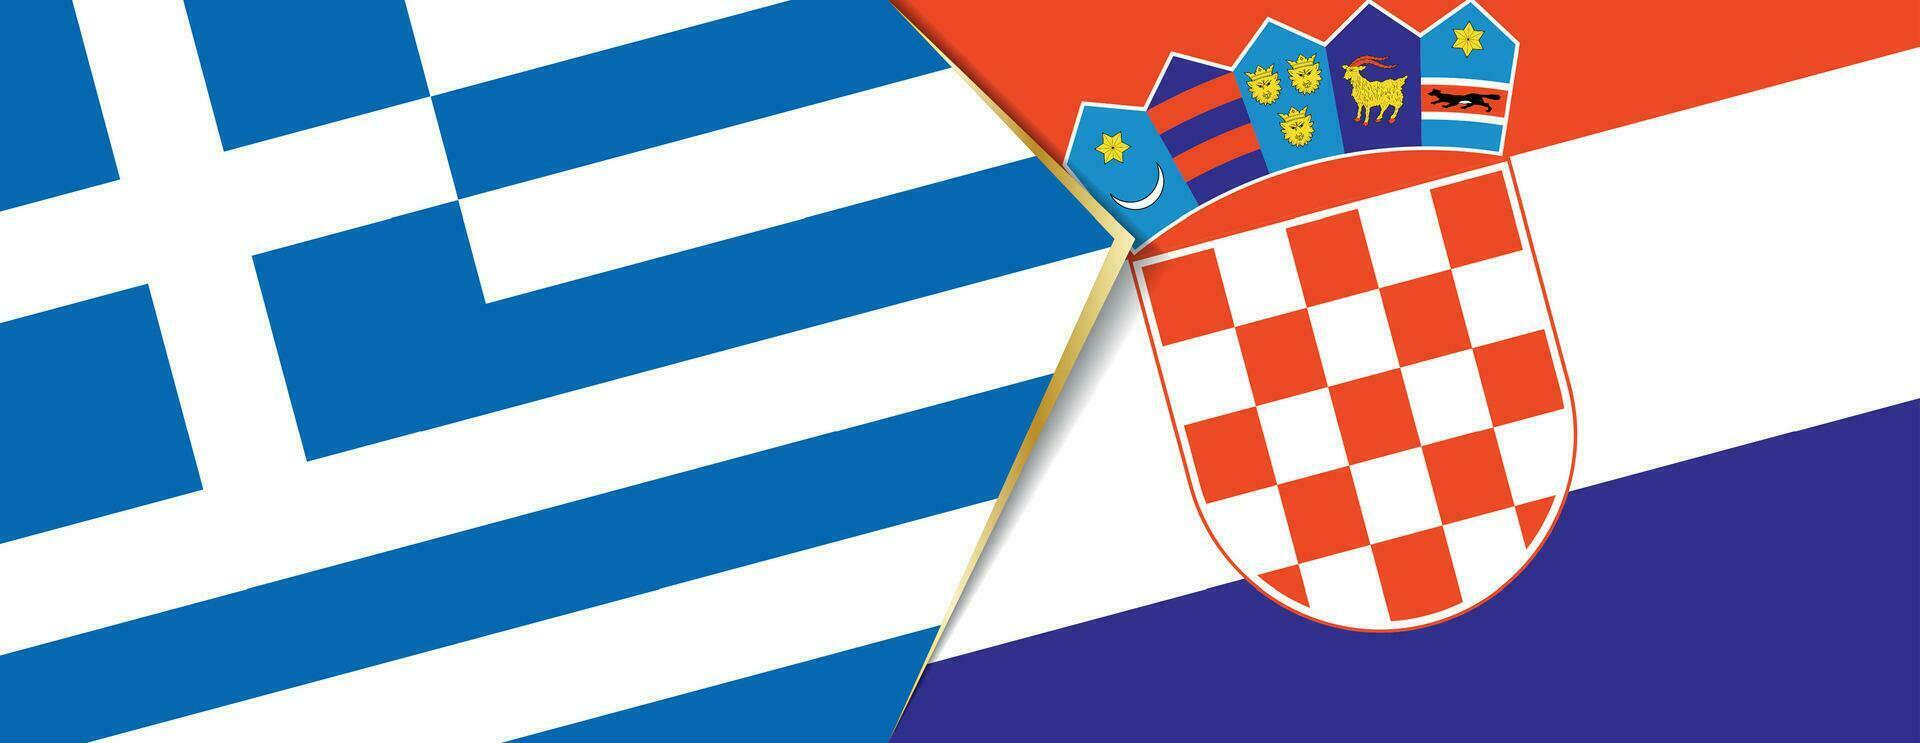 grekland och kroatien flaggor, två vektor flaggor.